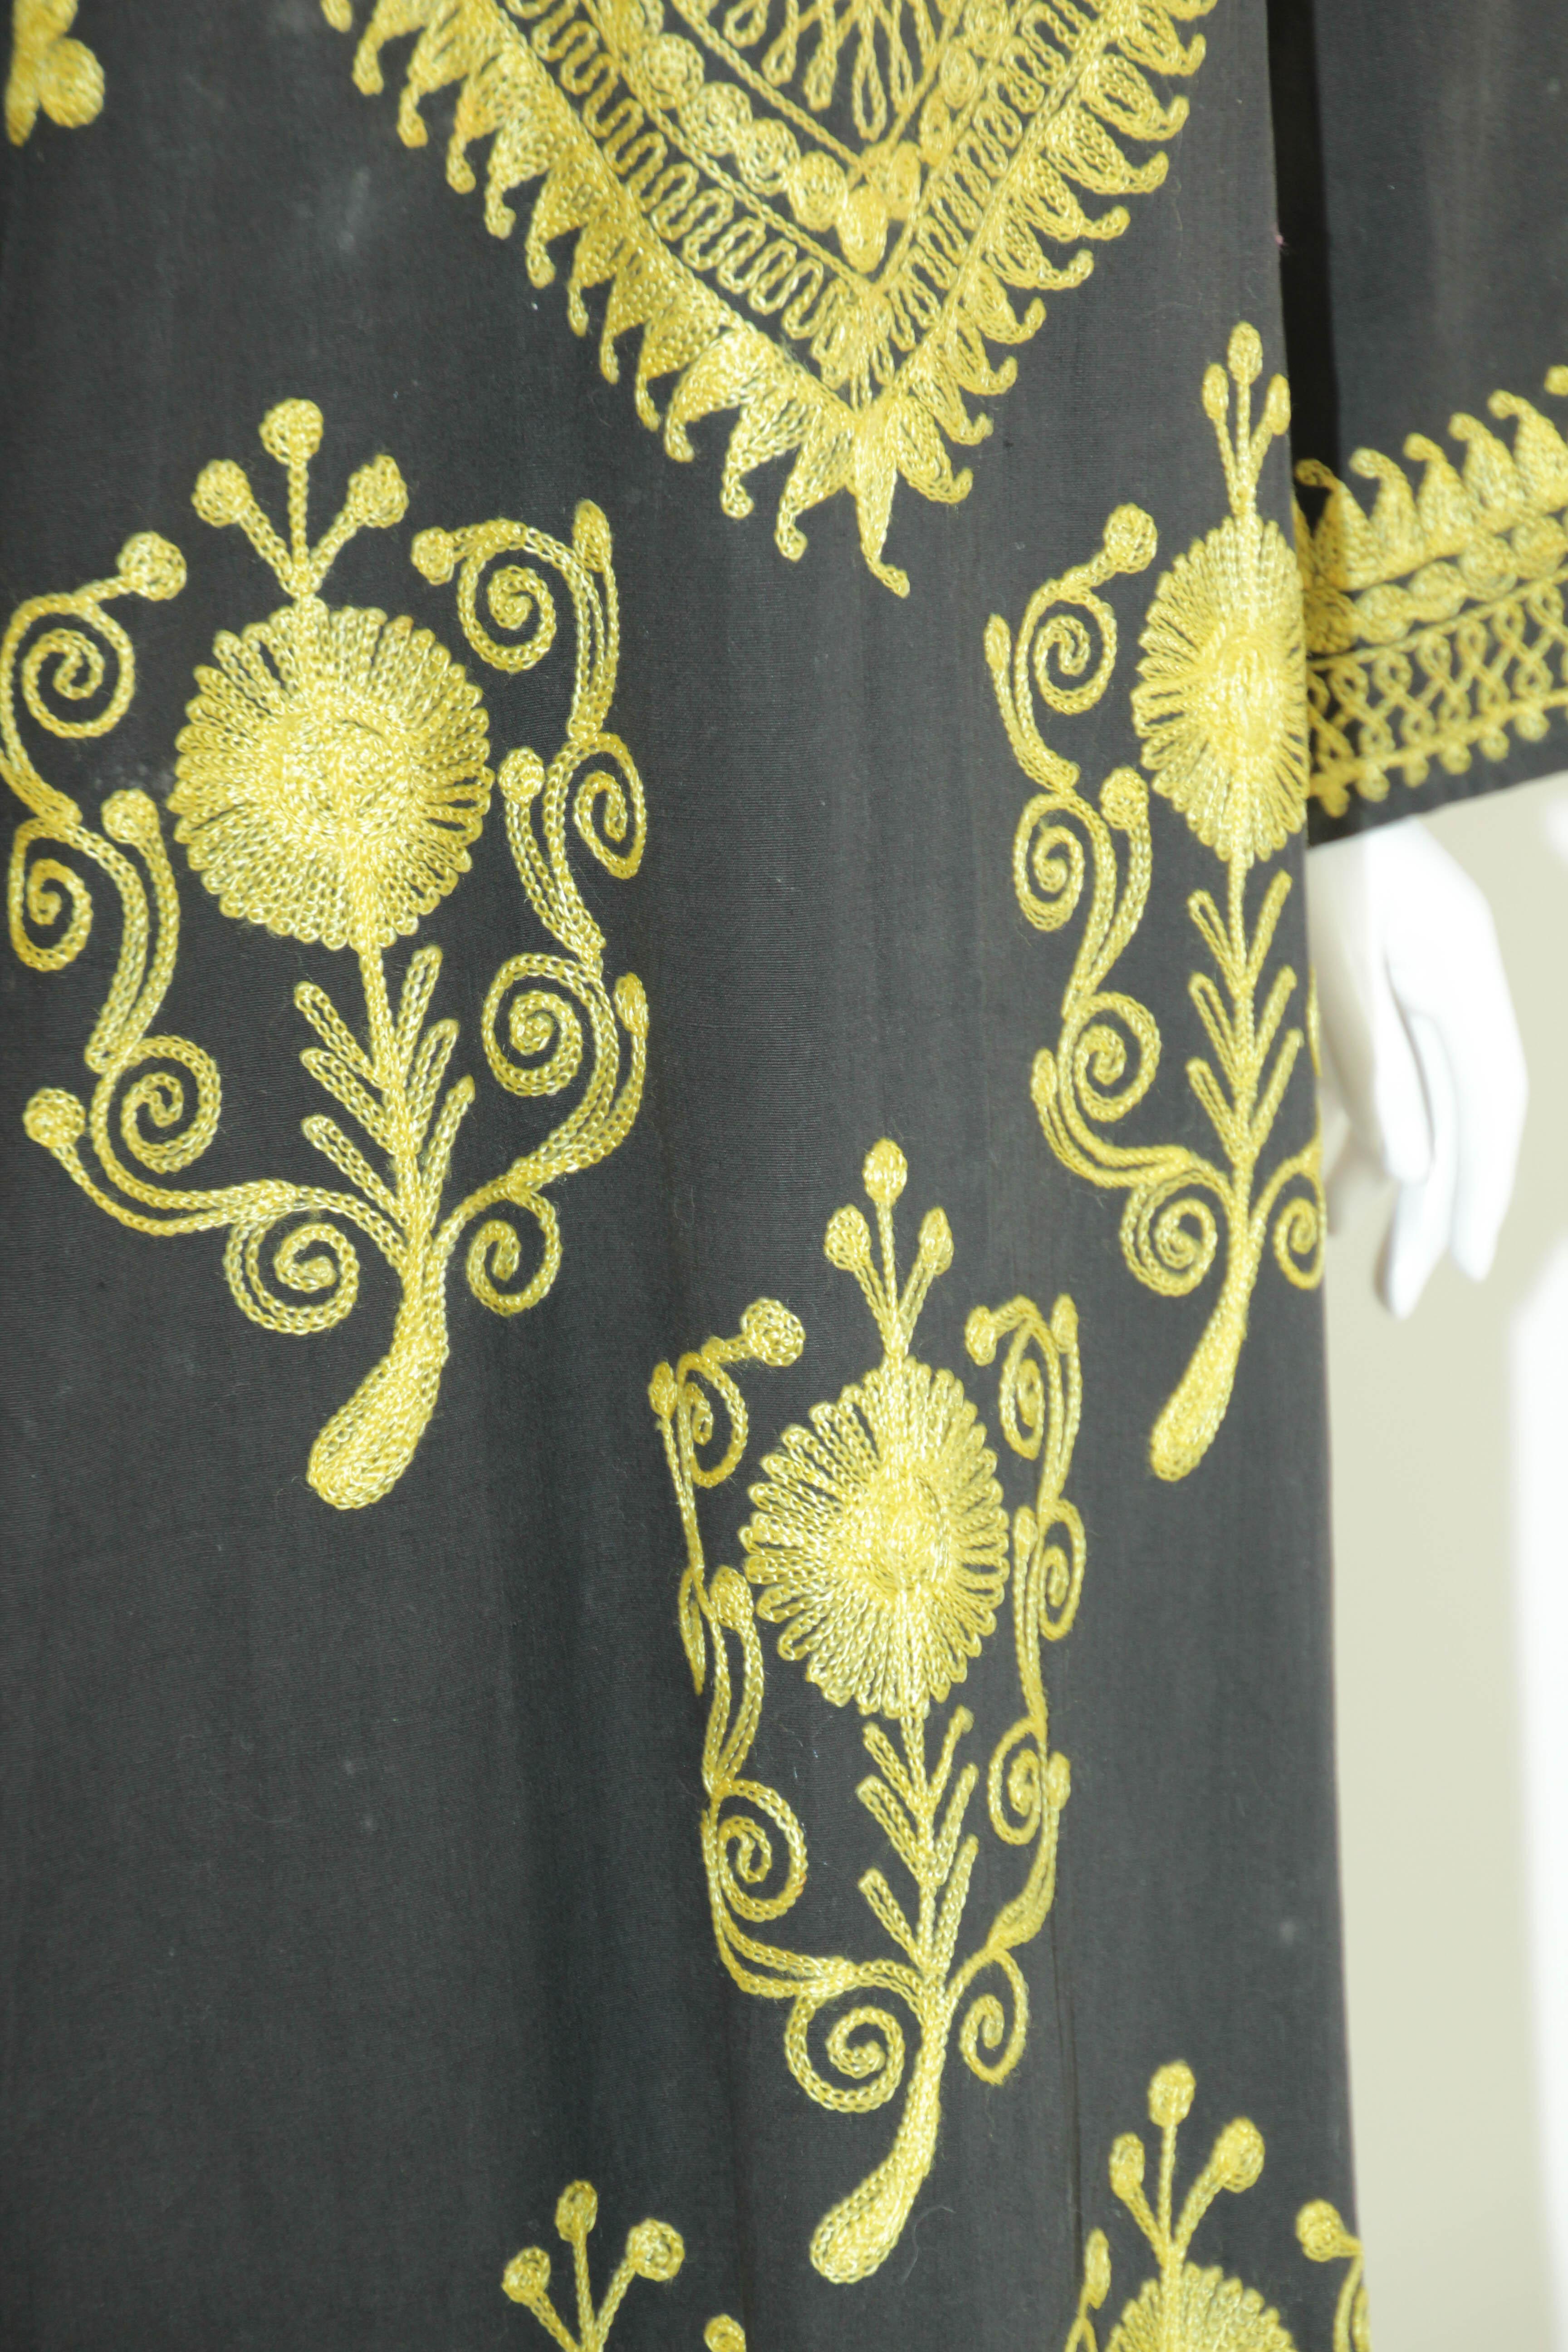 Black and Gold Caftan, 1970 Dress Vintage Ethnic Kuchi Kaftan For Sale 5